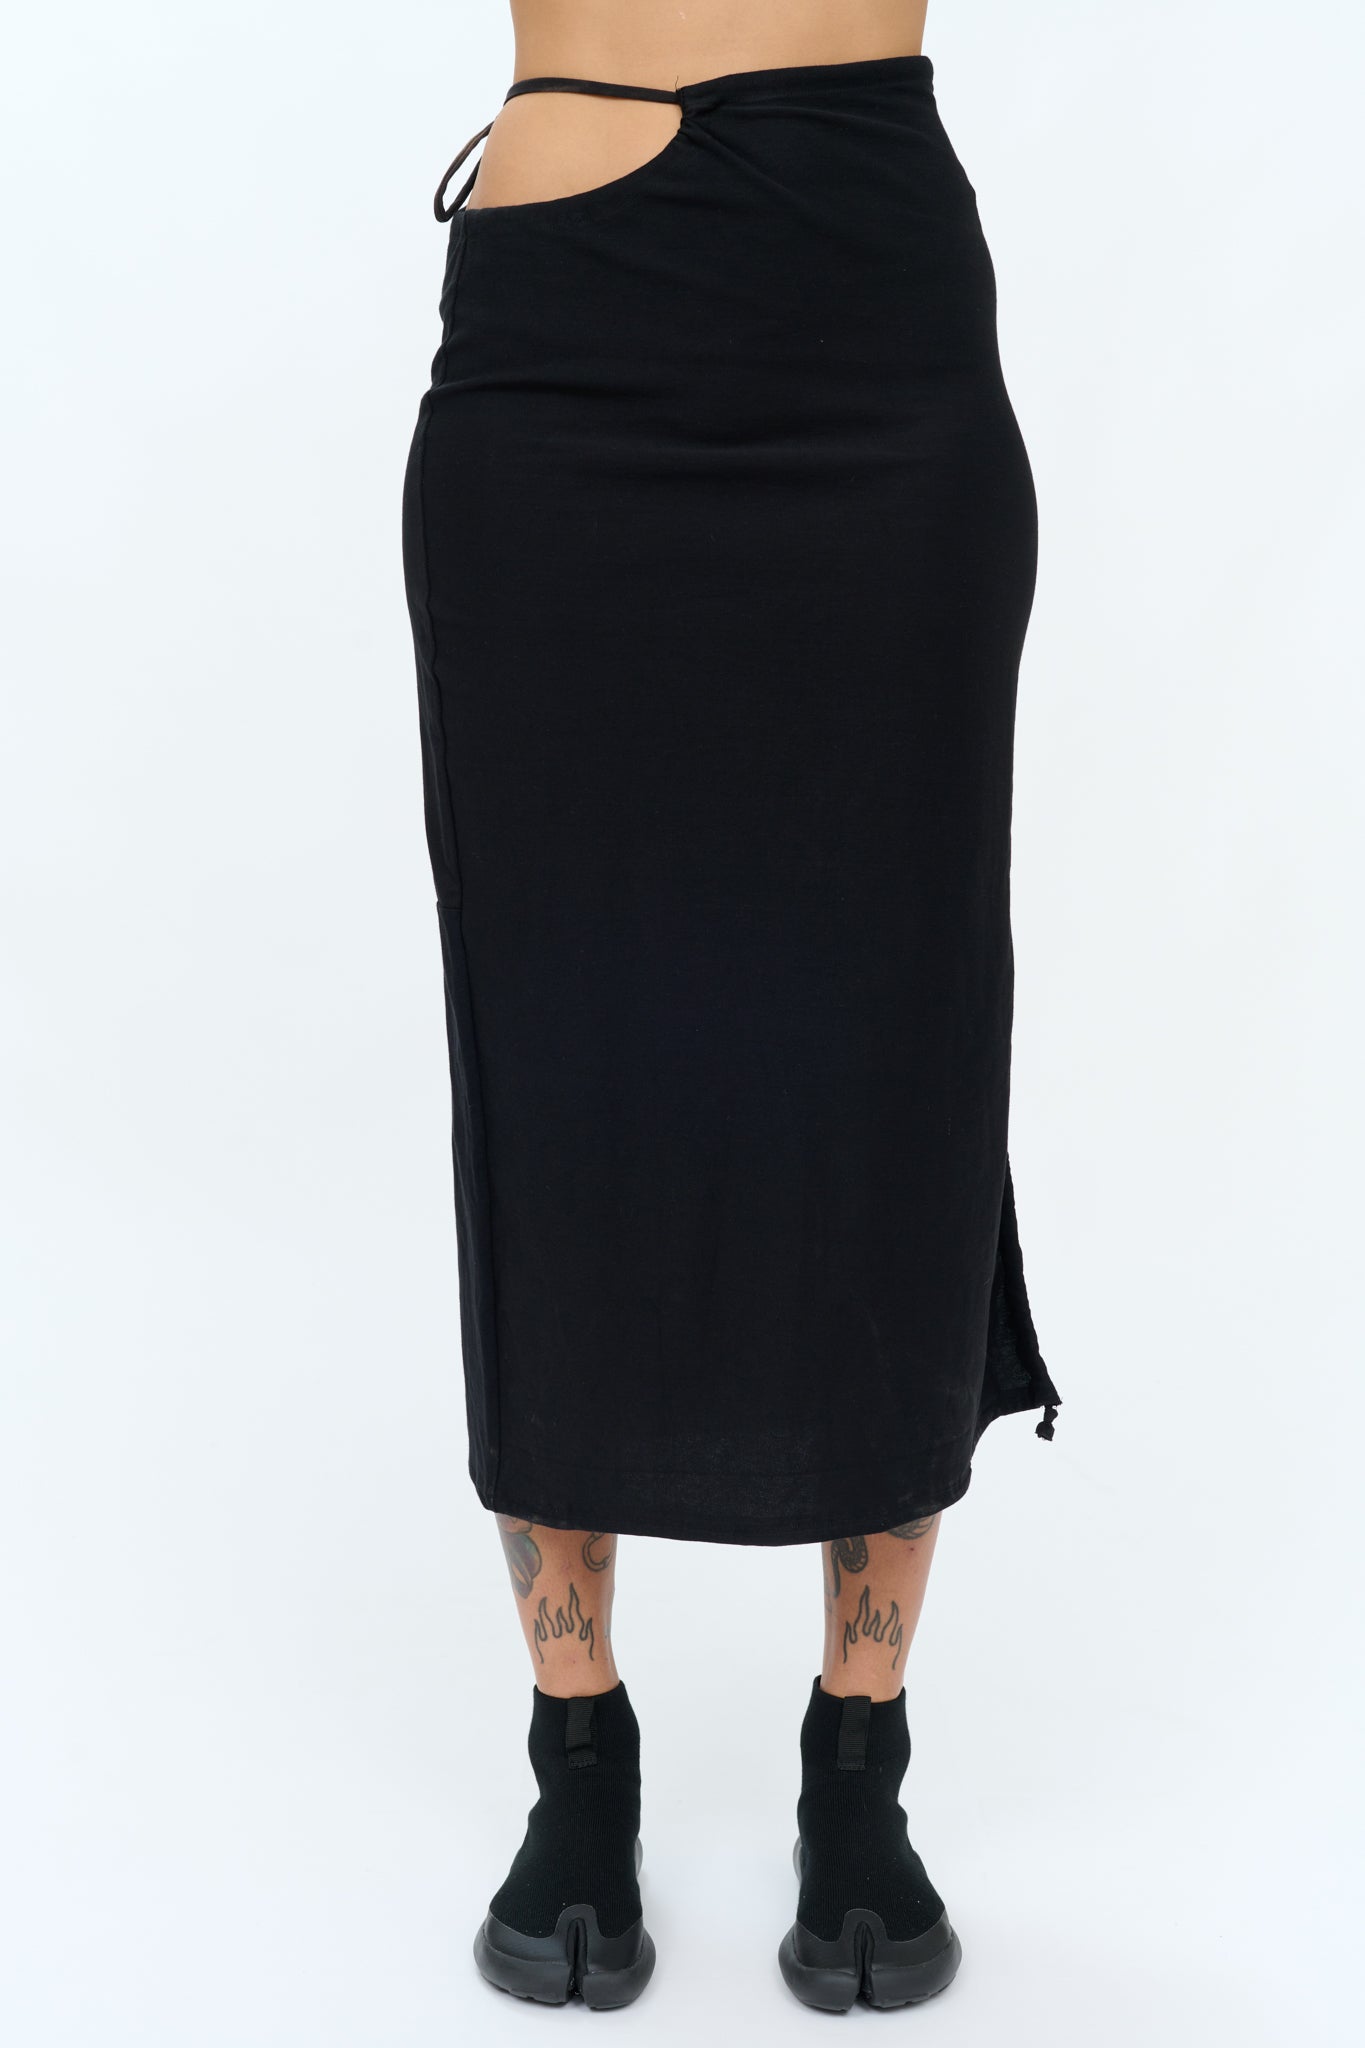 P6 adjustable skirt Black